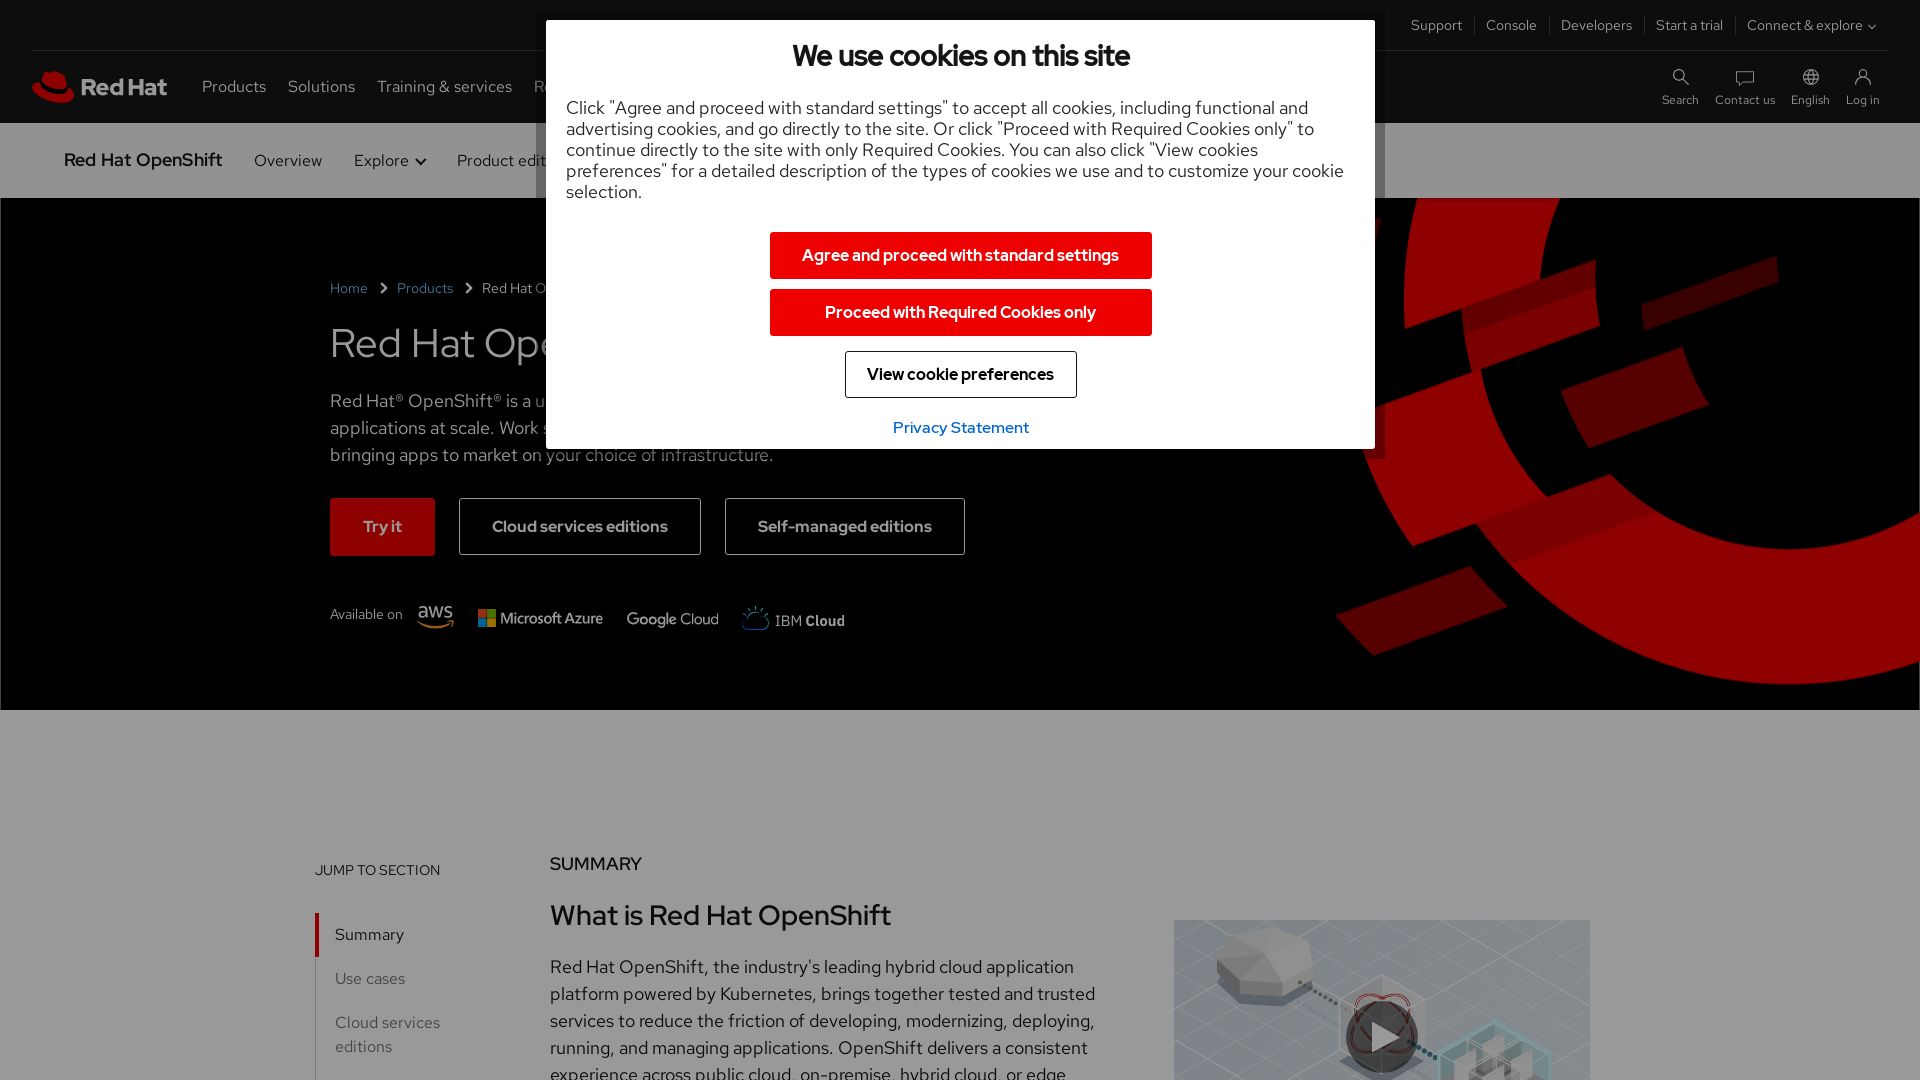 Website status openshift.com is   ONLINE